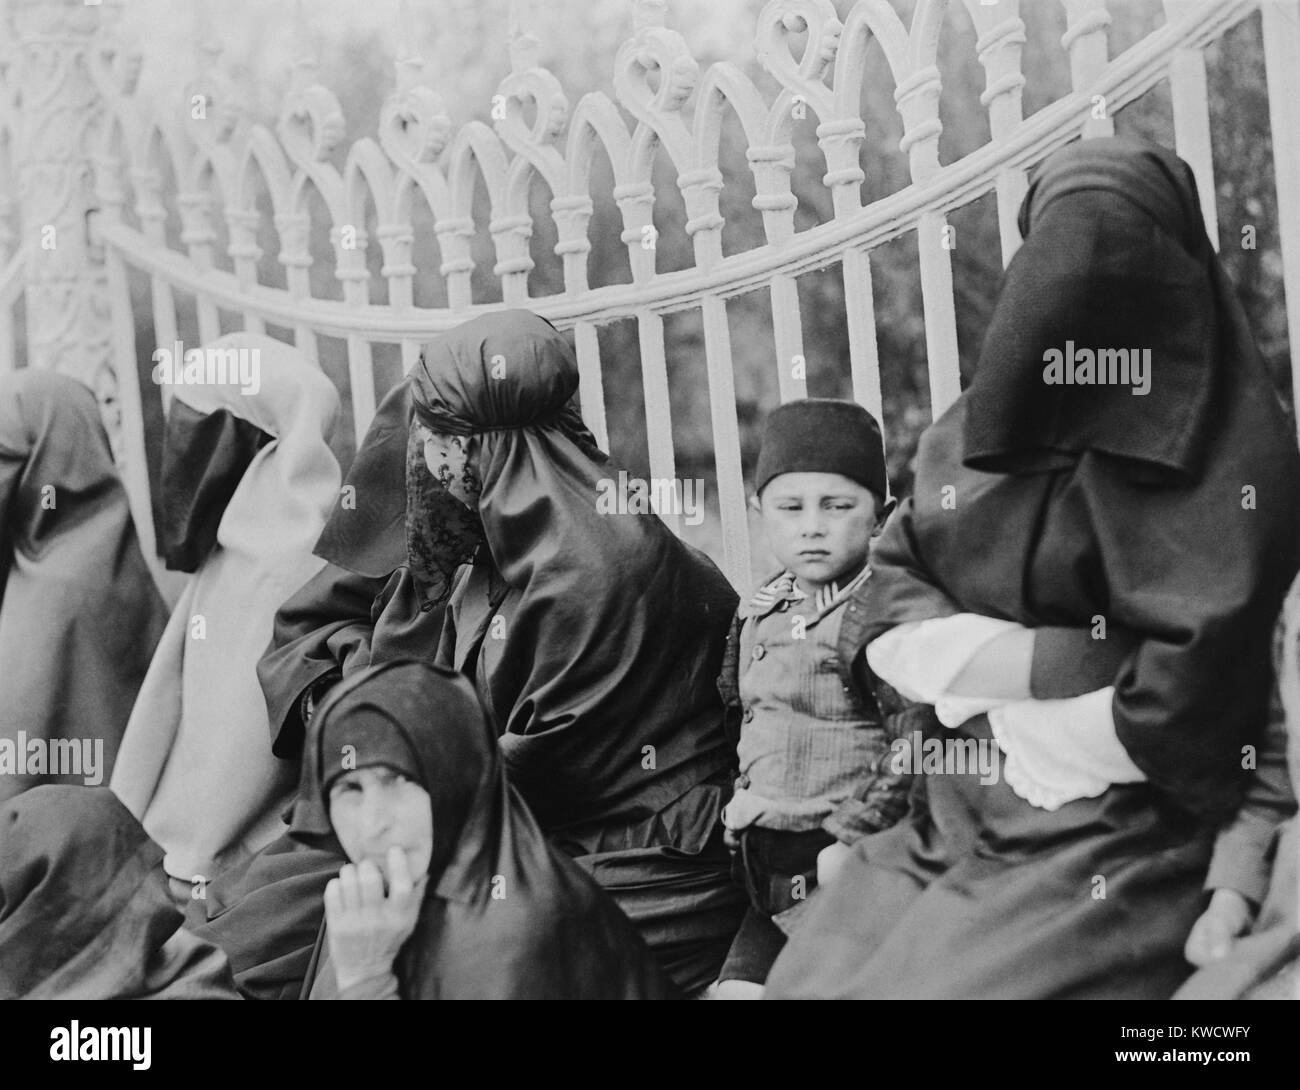 Les femmes islamiques voilées à Constantinople en 1919. Dans les années 1920, le nouveau leader de la Turquie, Kemal Atatürk, a permis aux femmes la liberté de porter des vêtements modernes (BSLOC 2017 1 116) Banque D'Images